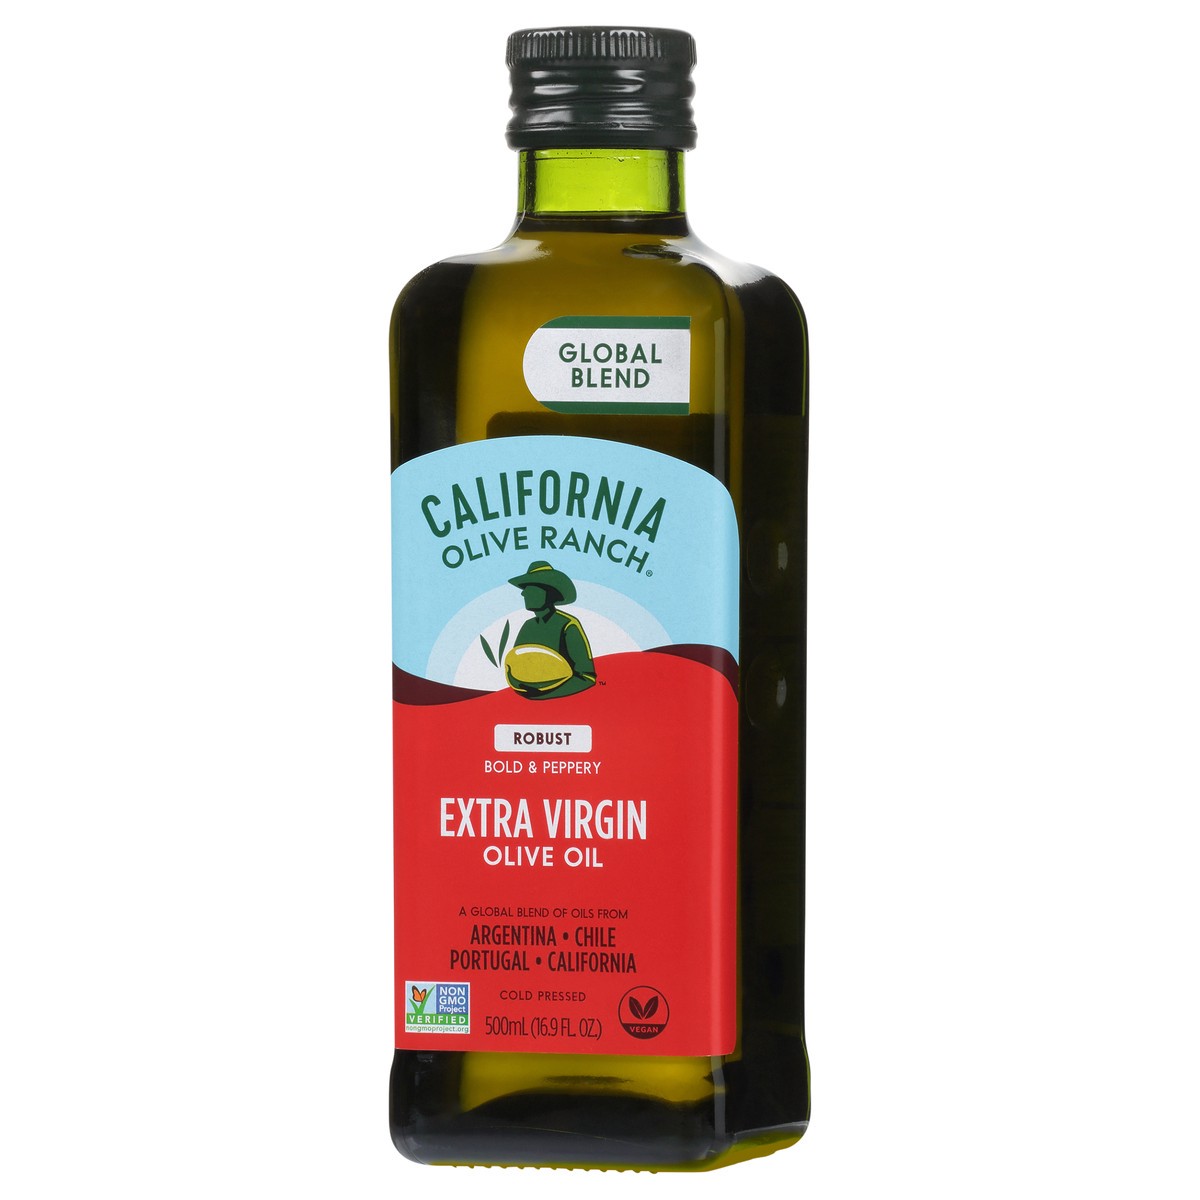 slide 9 of 14, California Olive Ranch Global Blend Robust Extra Virgin Olive Oil 16.9 fl. oz. Bottle, 16.9 fl oz